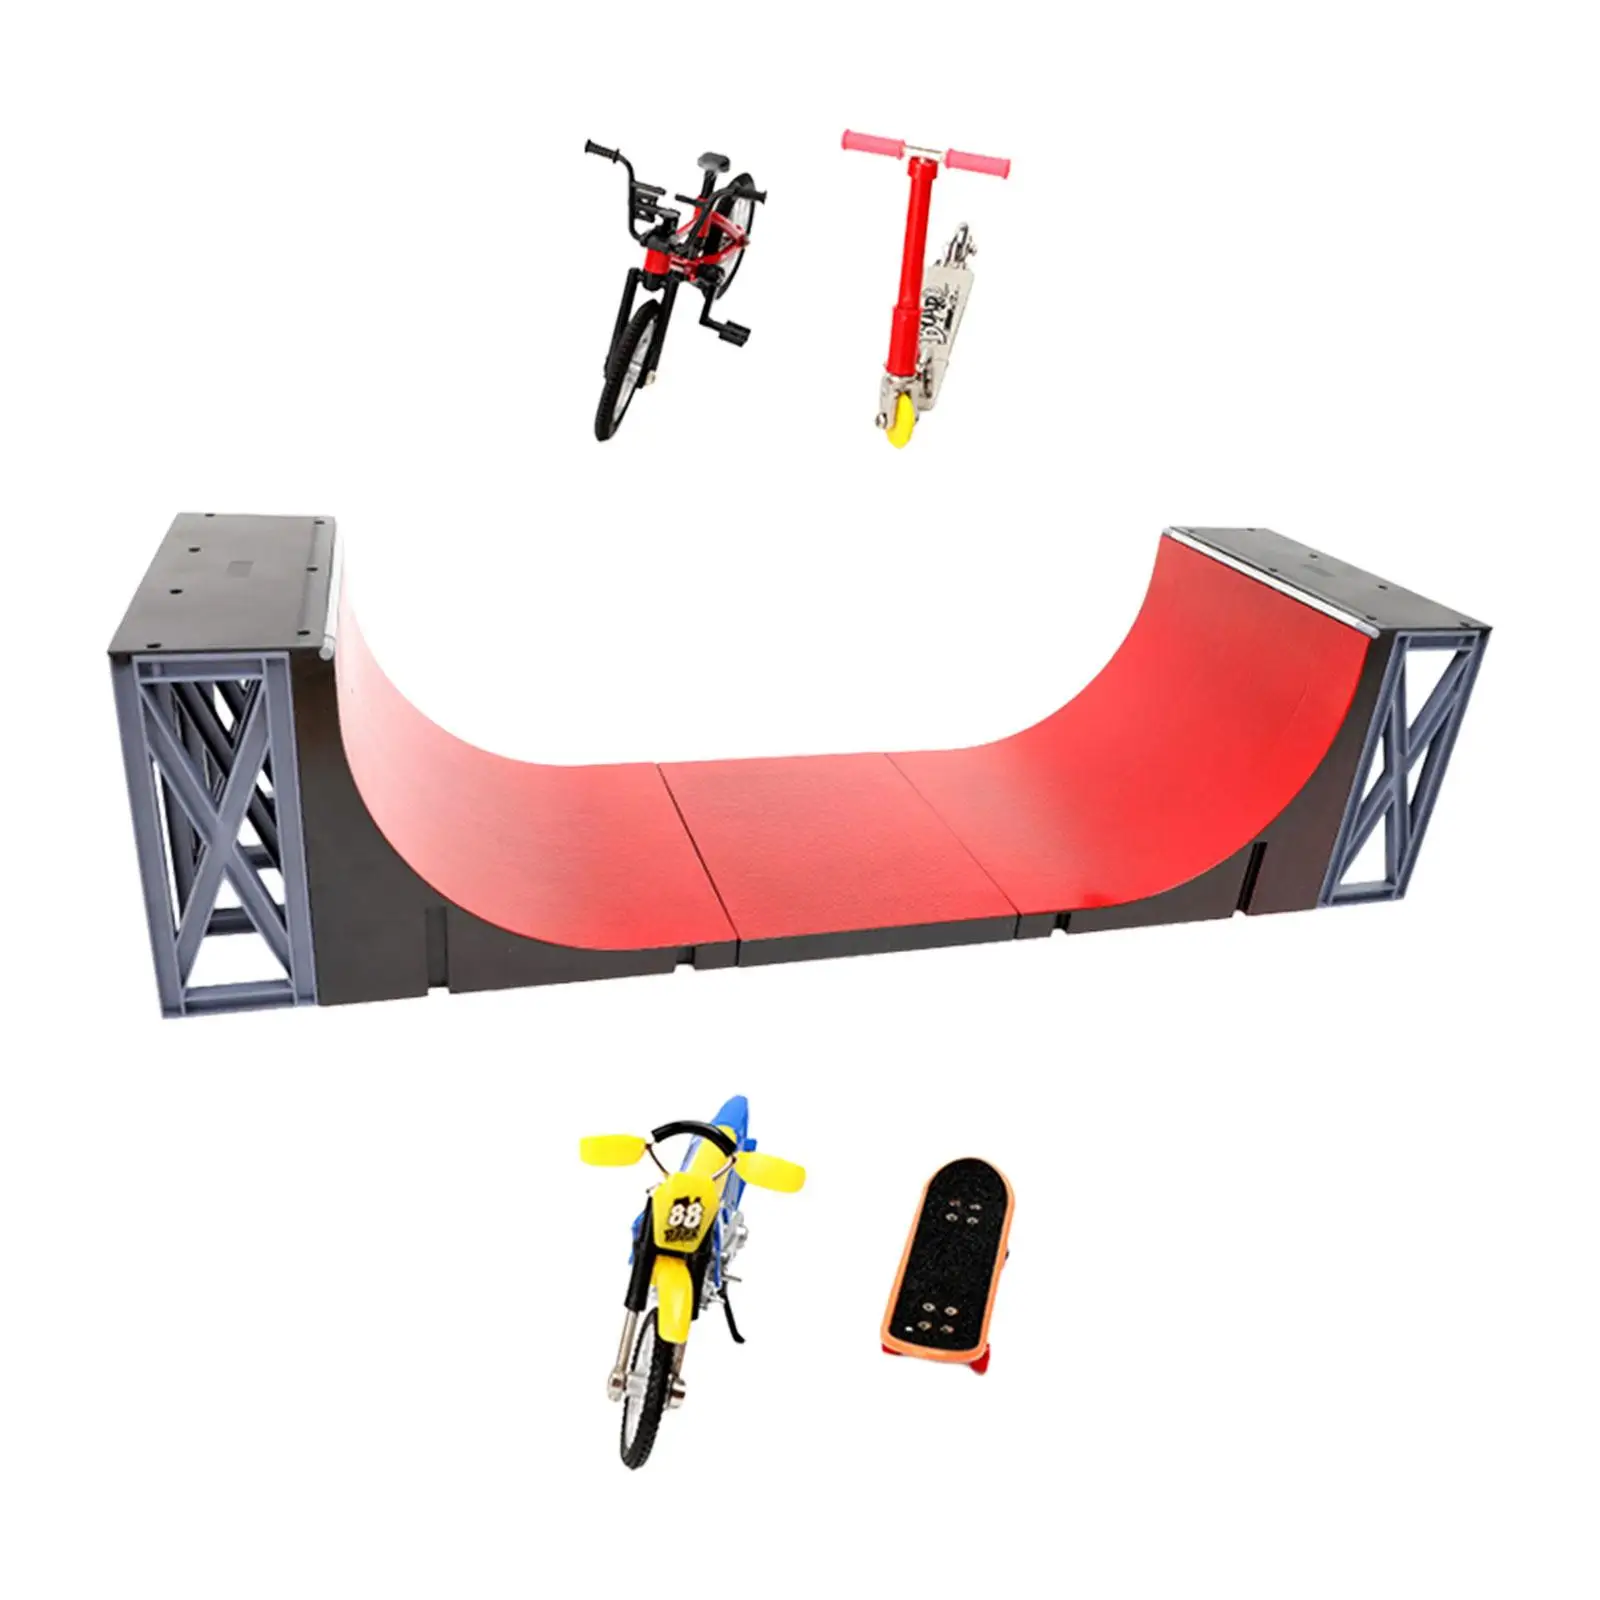 5x Finger Skateboard Toys Training Skate Ramp including Finger Bike Finger Skateboard Ramps Toys for Kids Girls Adults Boys